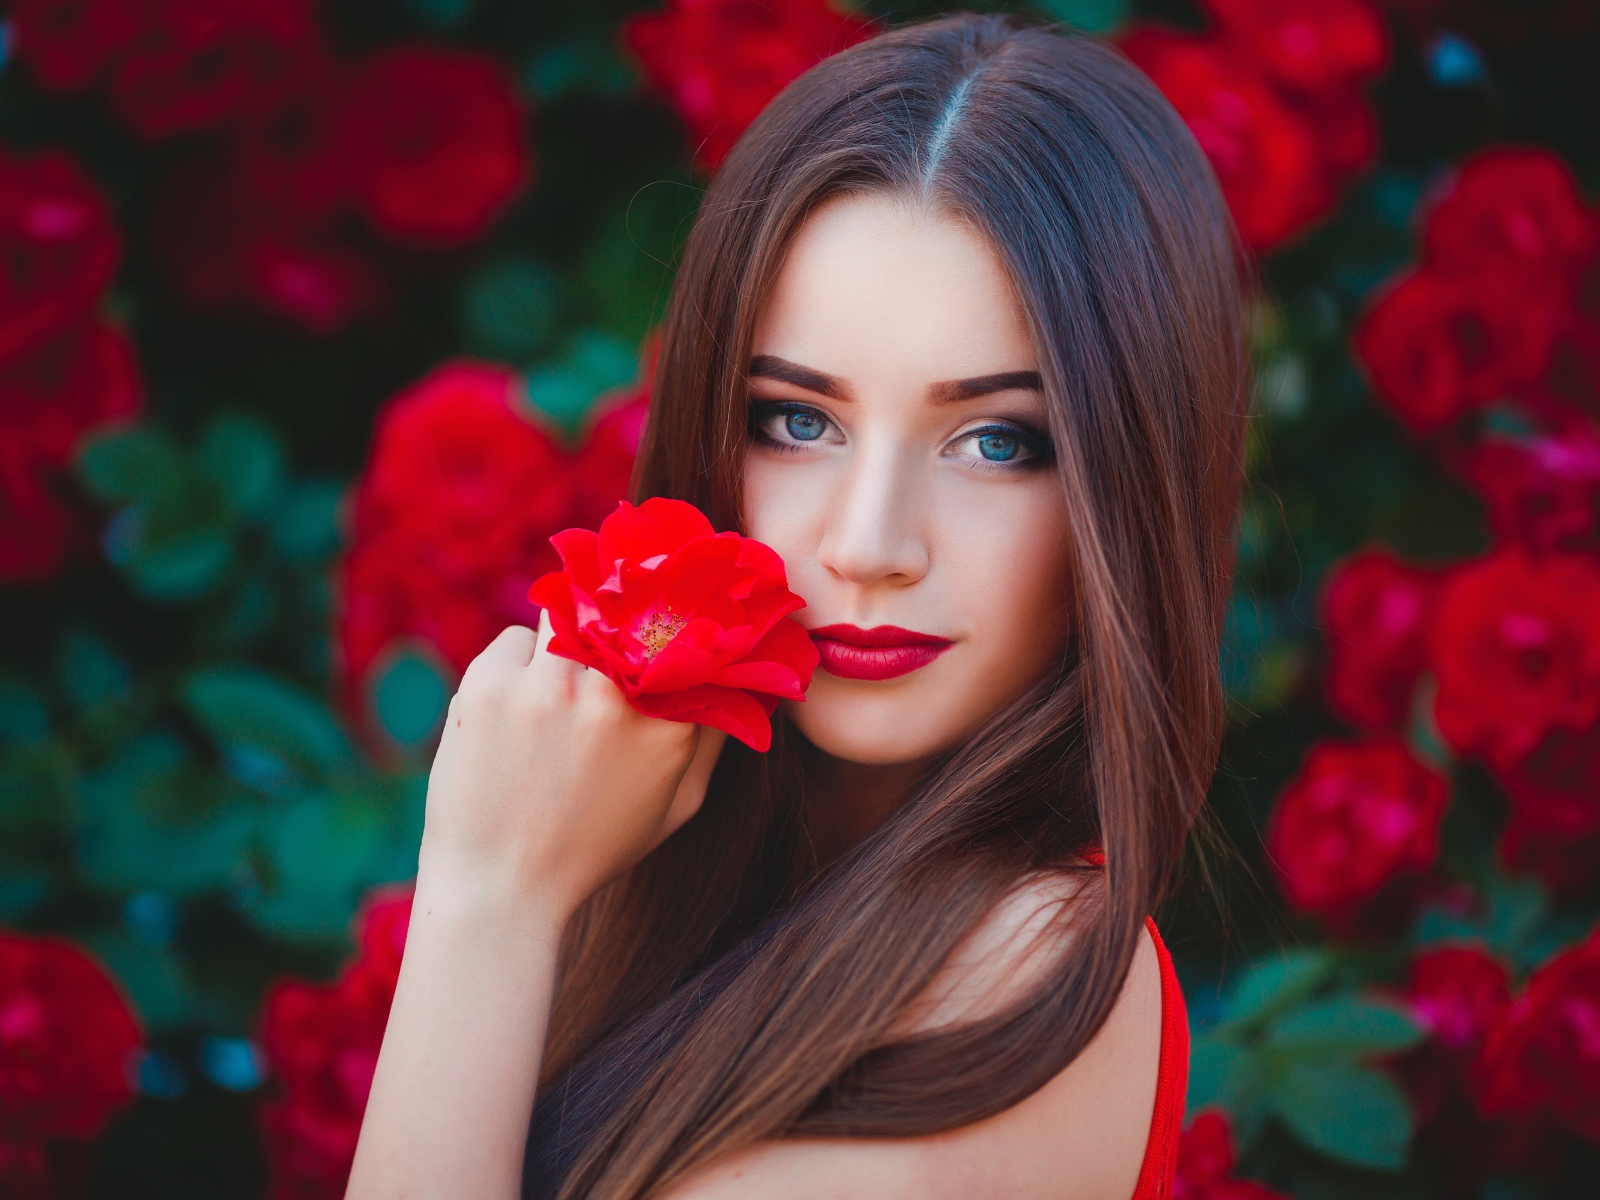 Красивая голубоглазая девушка с красной розой в руке